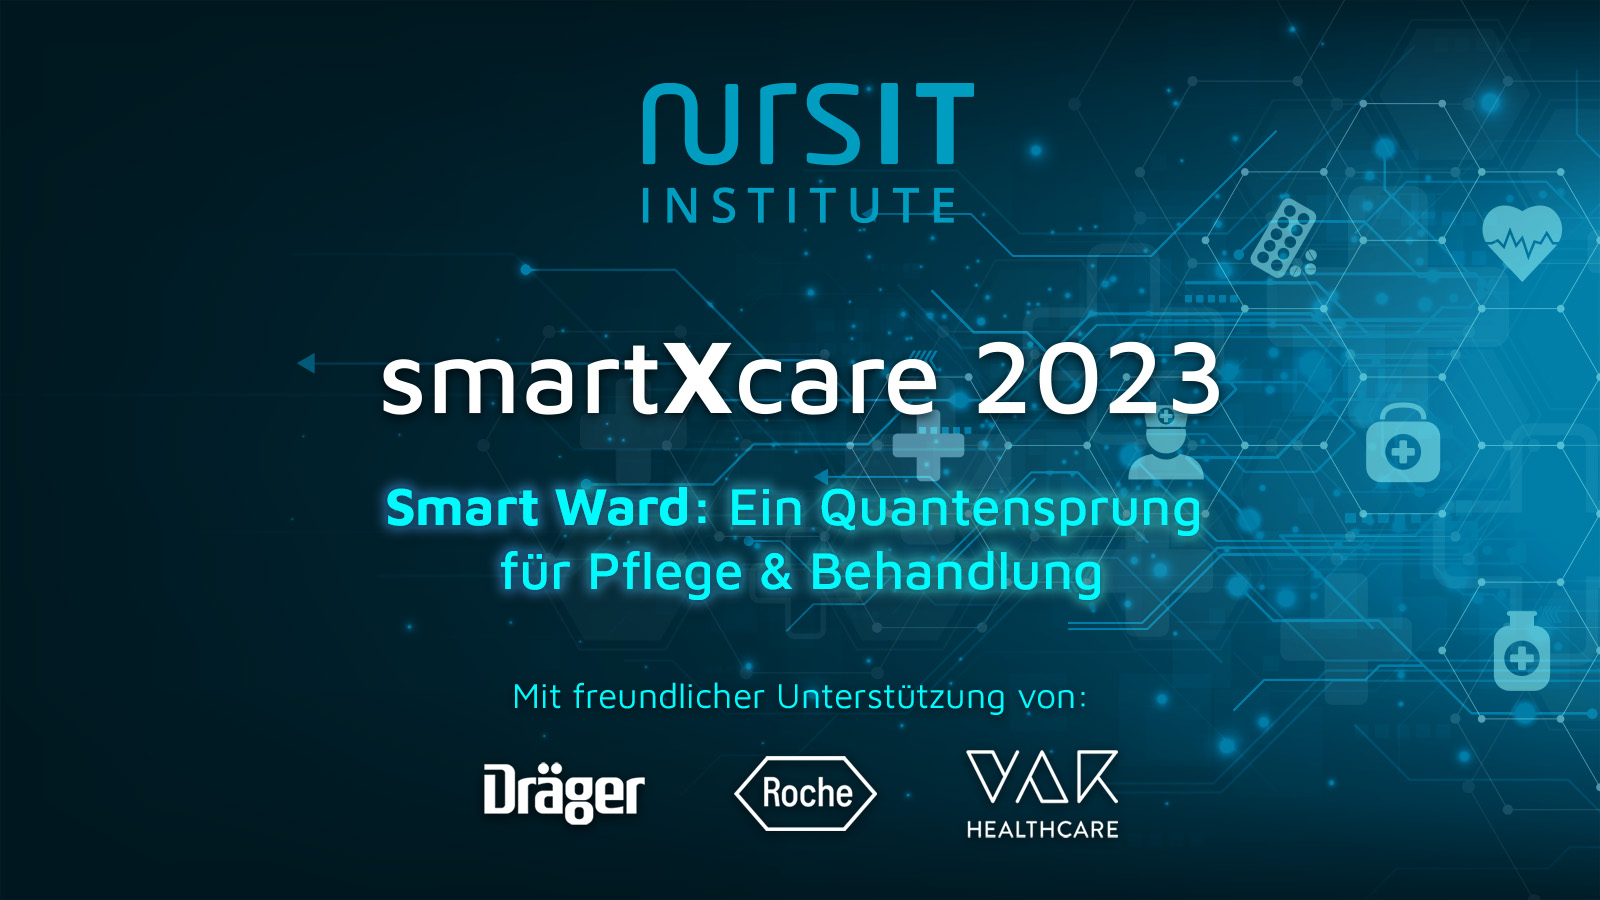 smartXcare 2023: Die Zukunft der Pflege heute